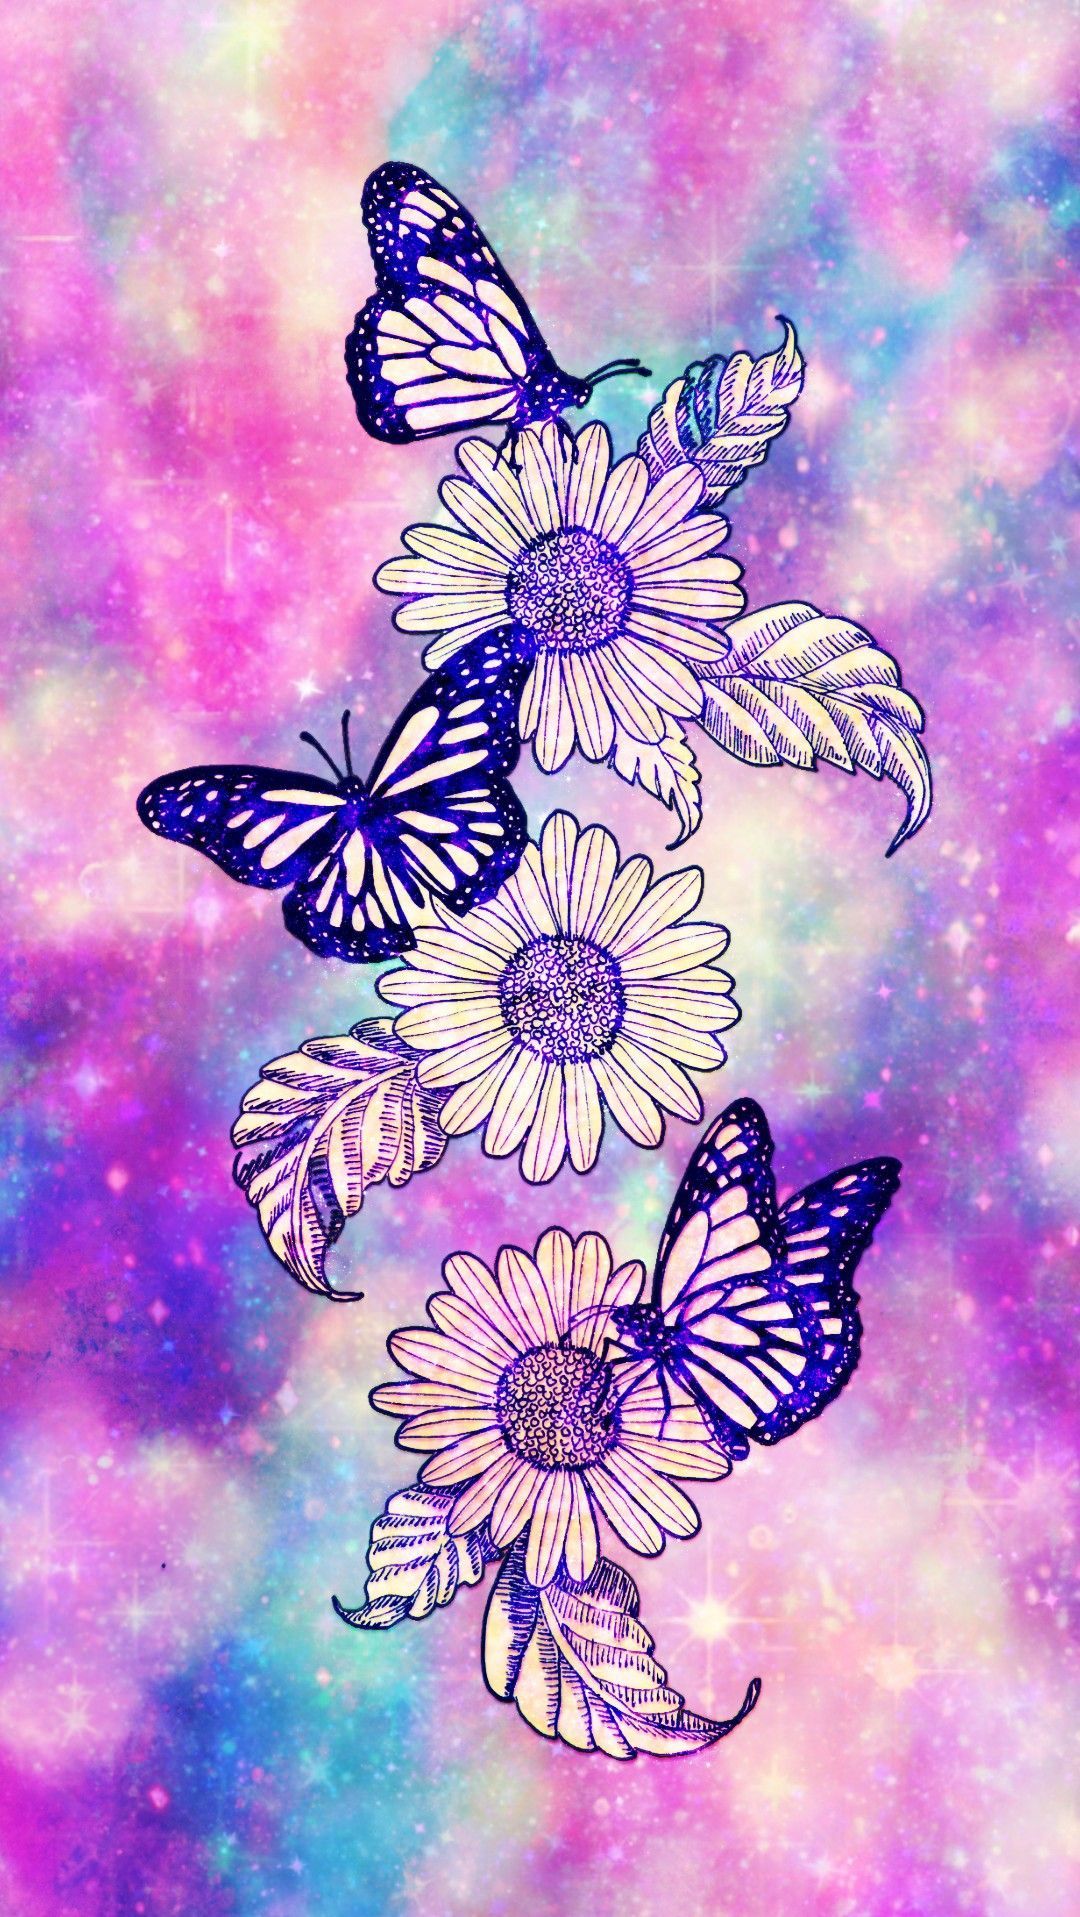 Free Sunflower and Butterfly Wallpaper  JPG  Templatenet